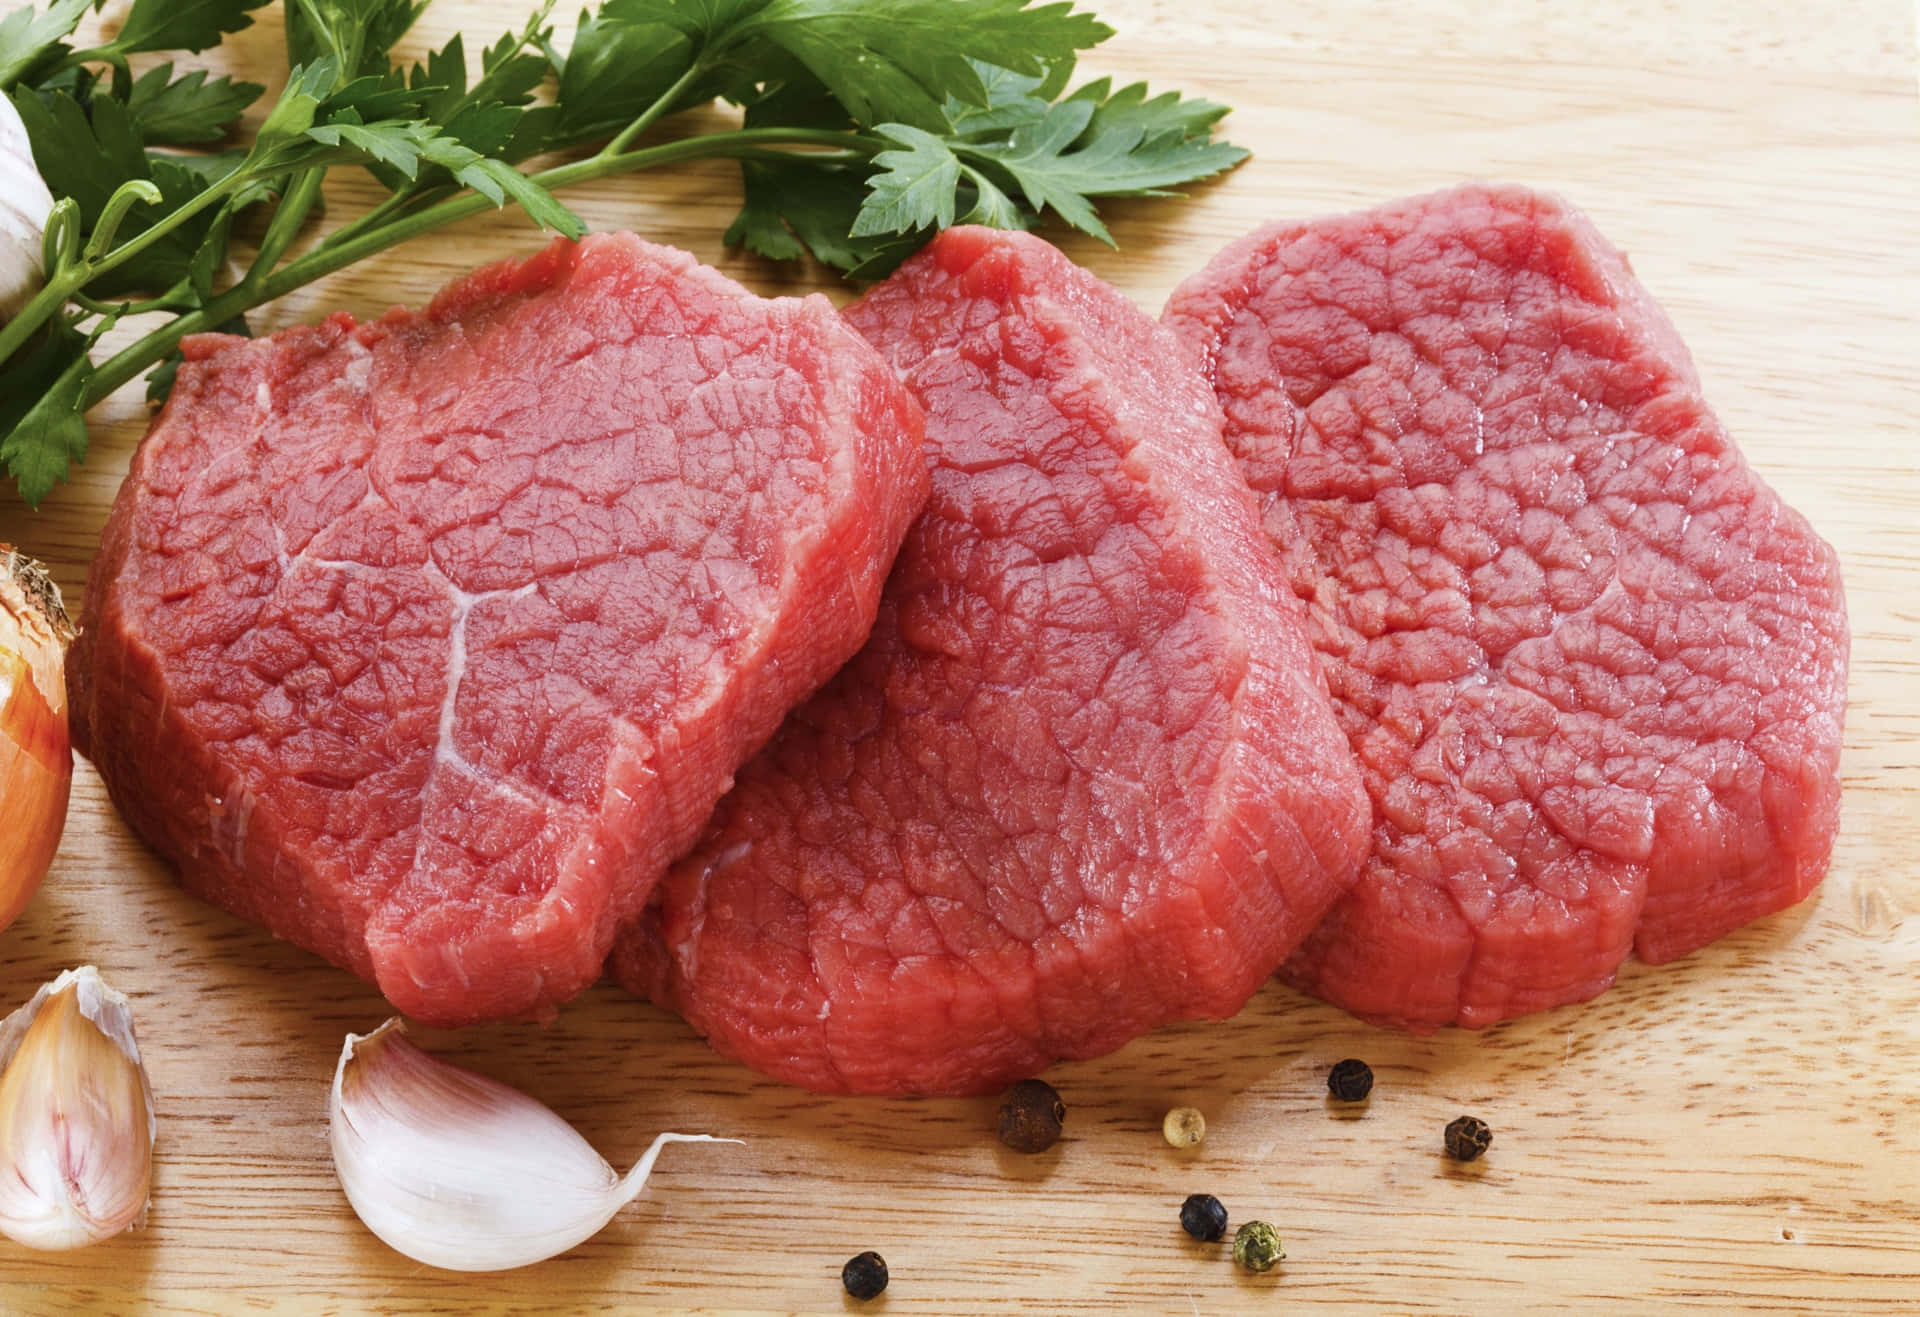 Wählensie Hochwertiges Erstklassiges Fleisch Für Ihre Nächste Mahlzeit Aus!